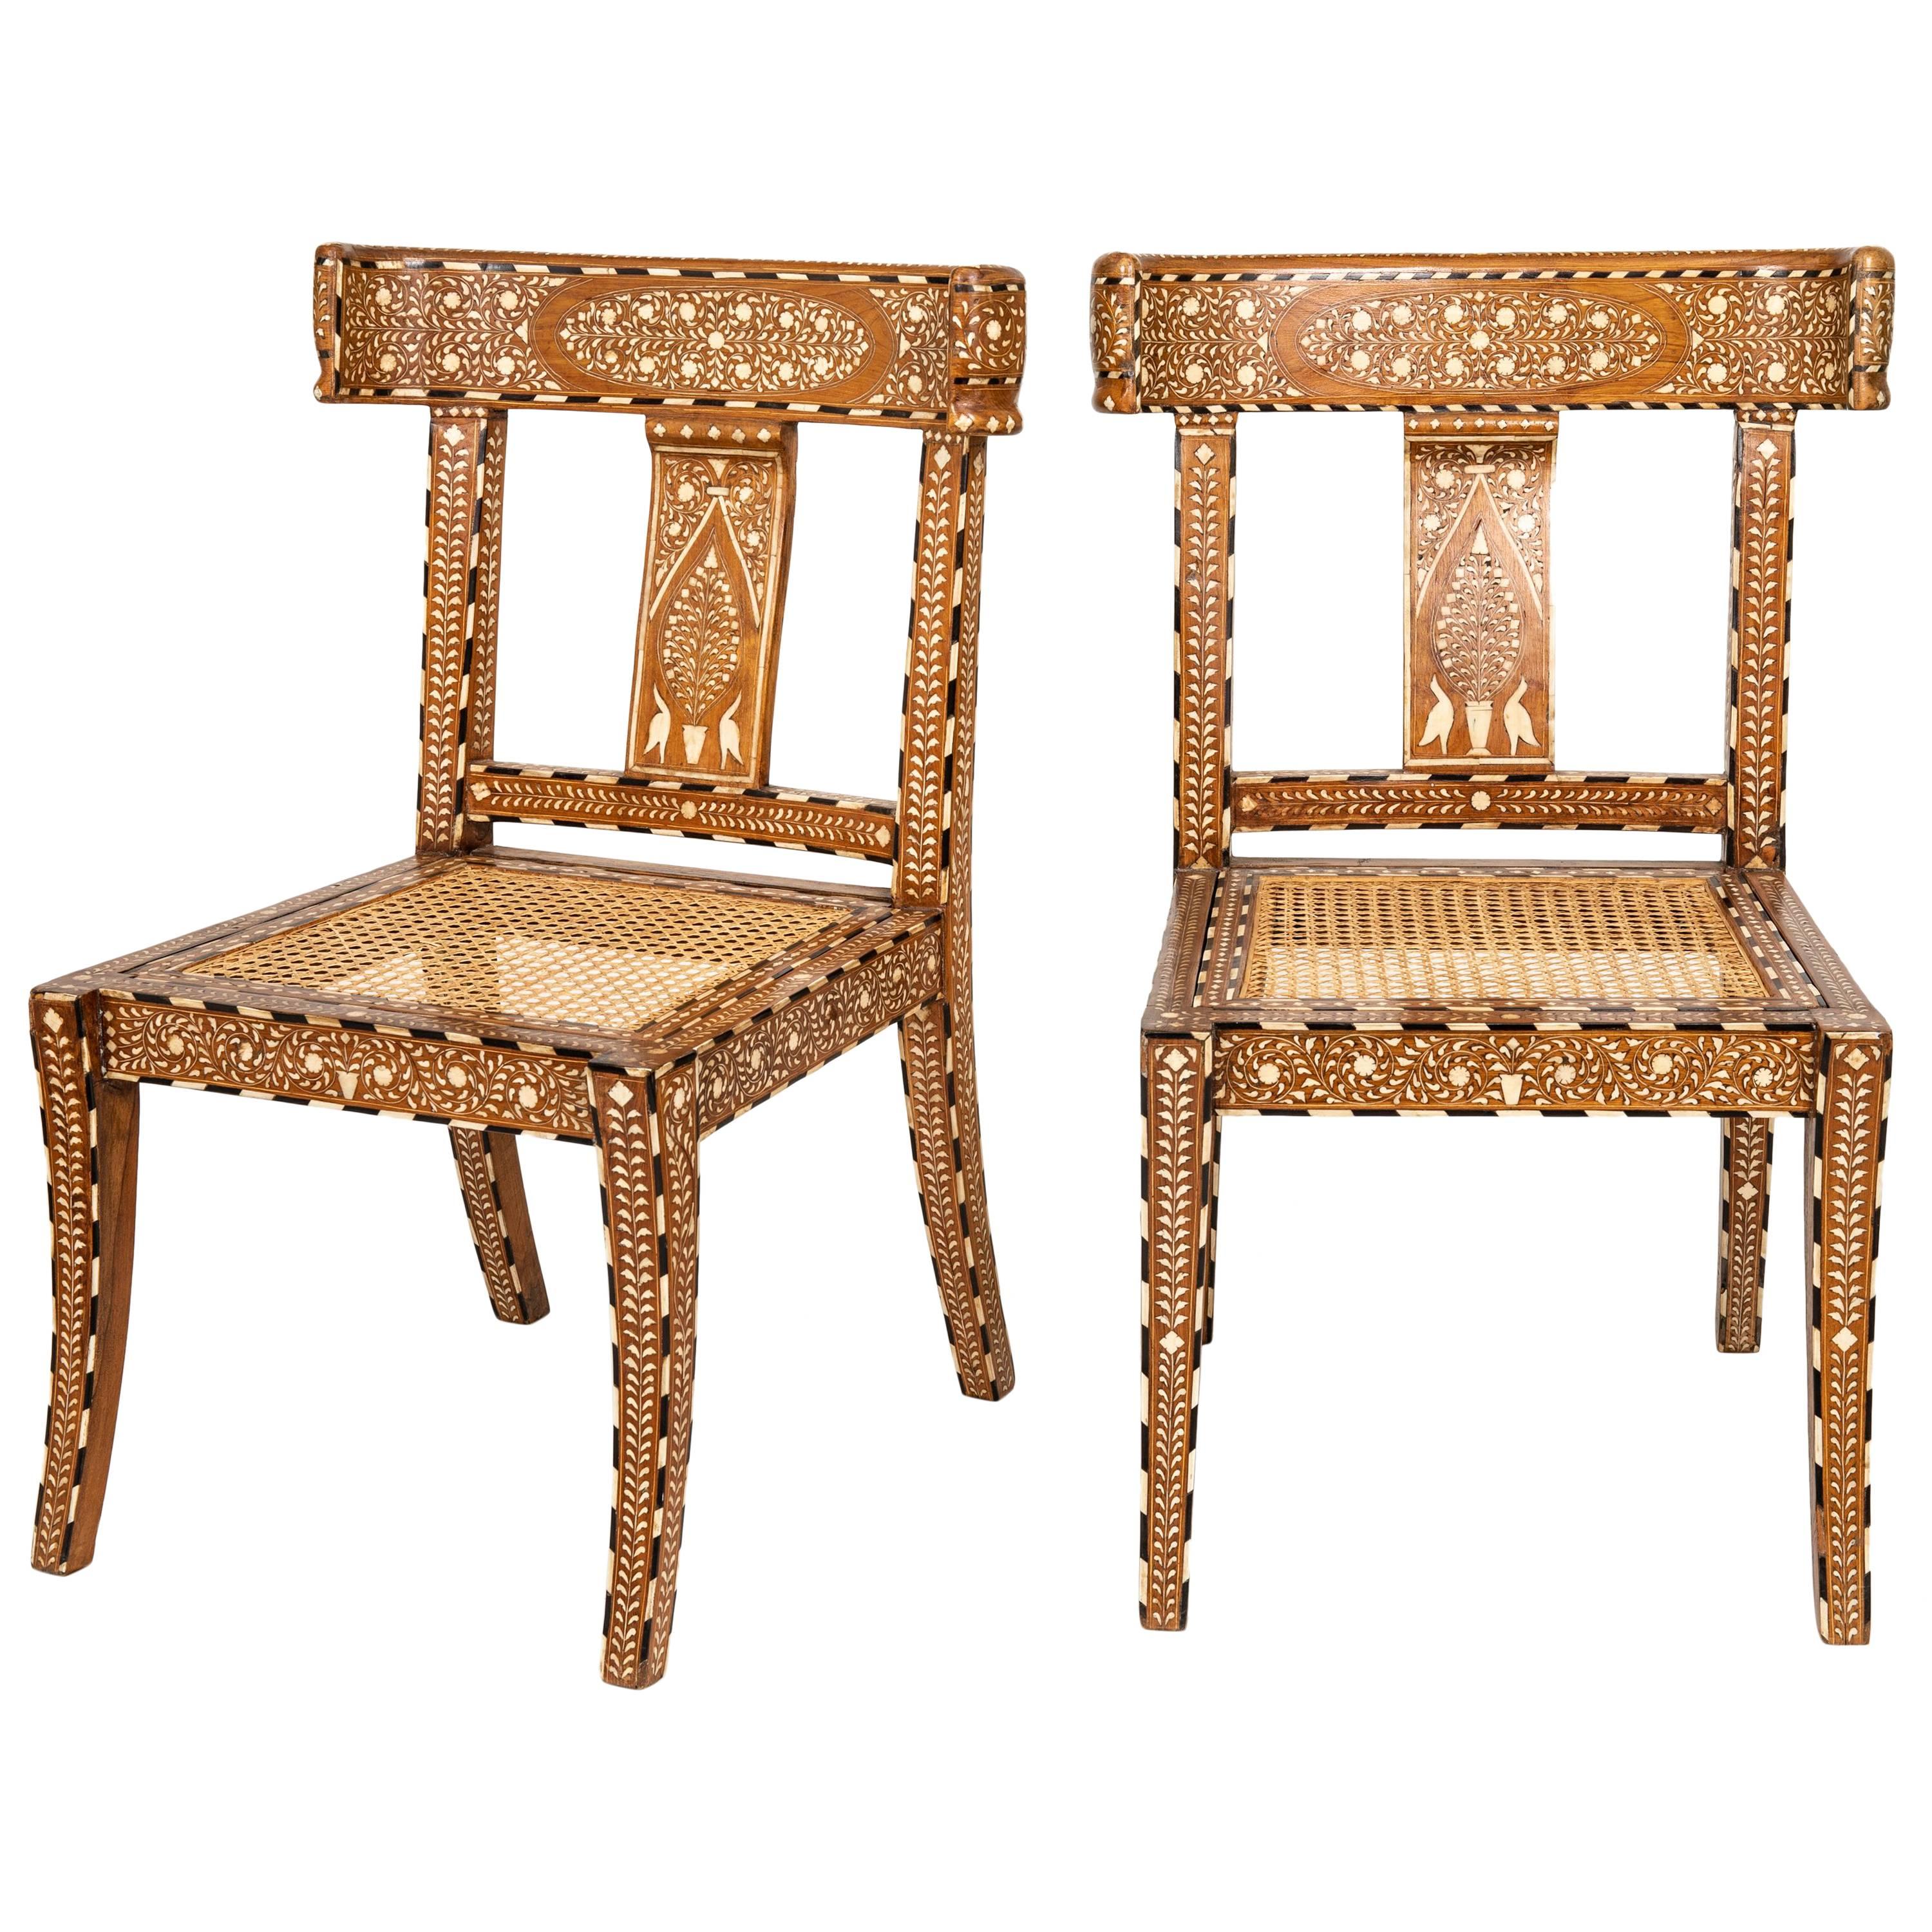 Pair of Bone Inlaid Chairs